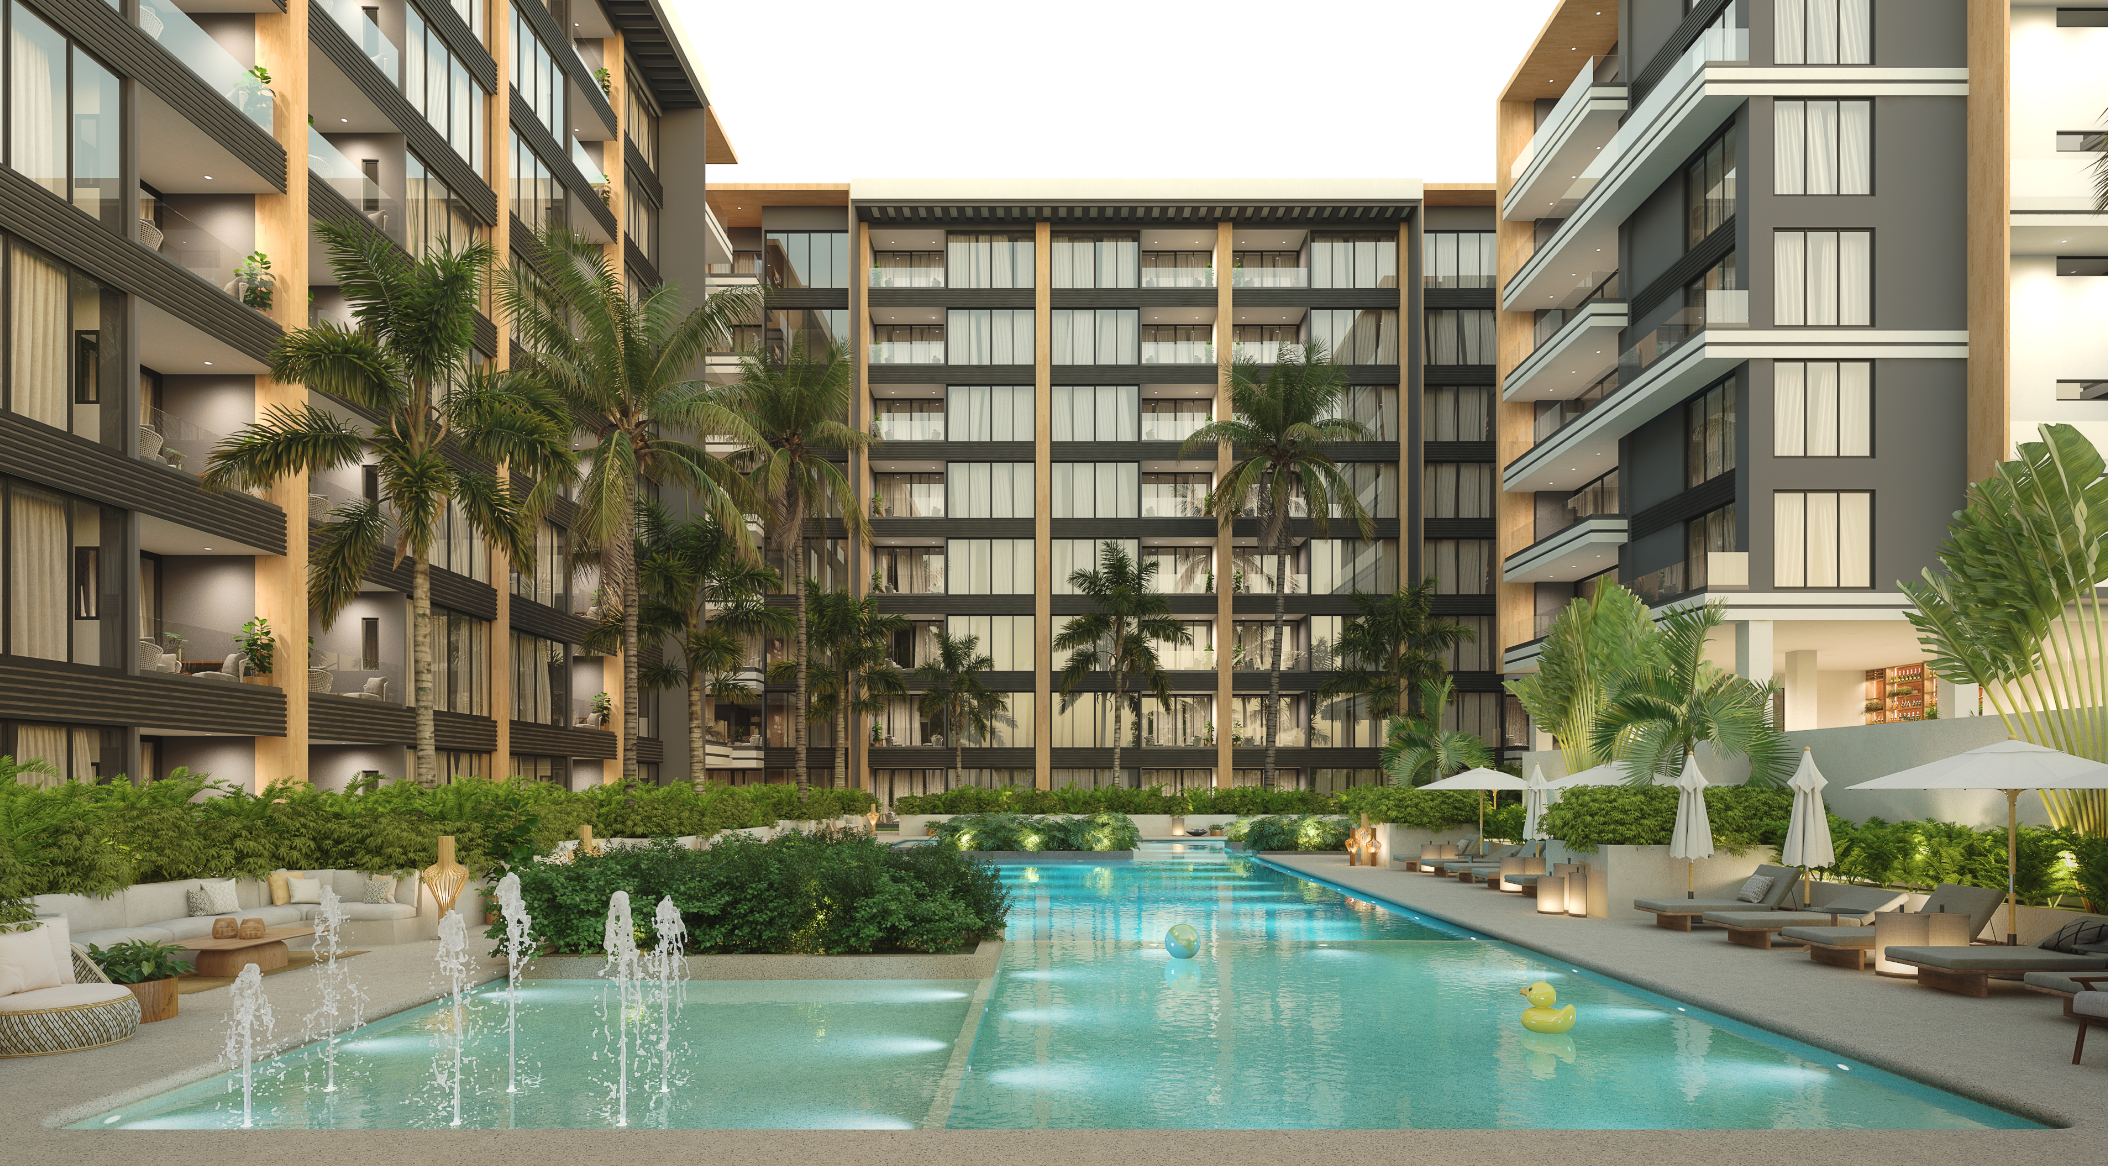 Departamentos estilo resort en Cancún con más de 50 amenidades: Origin by Wolf